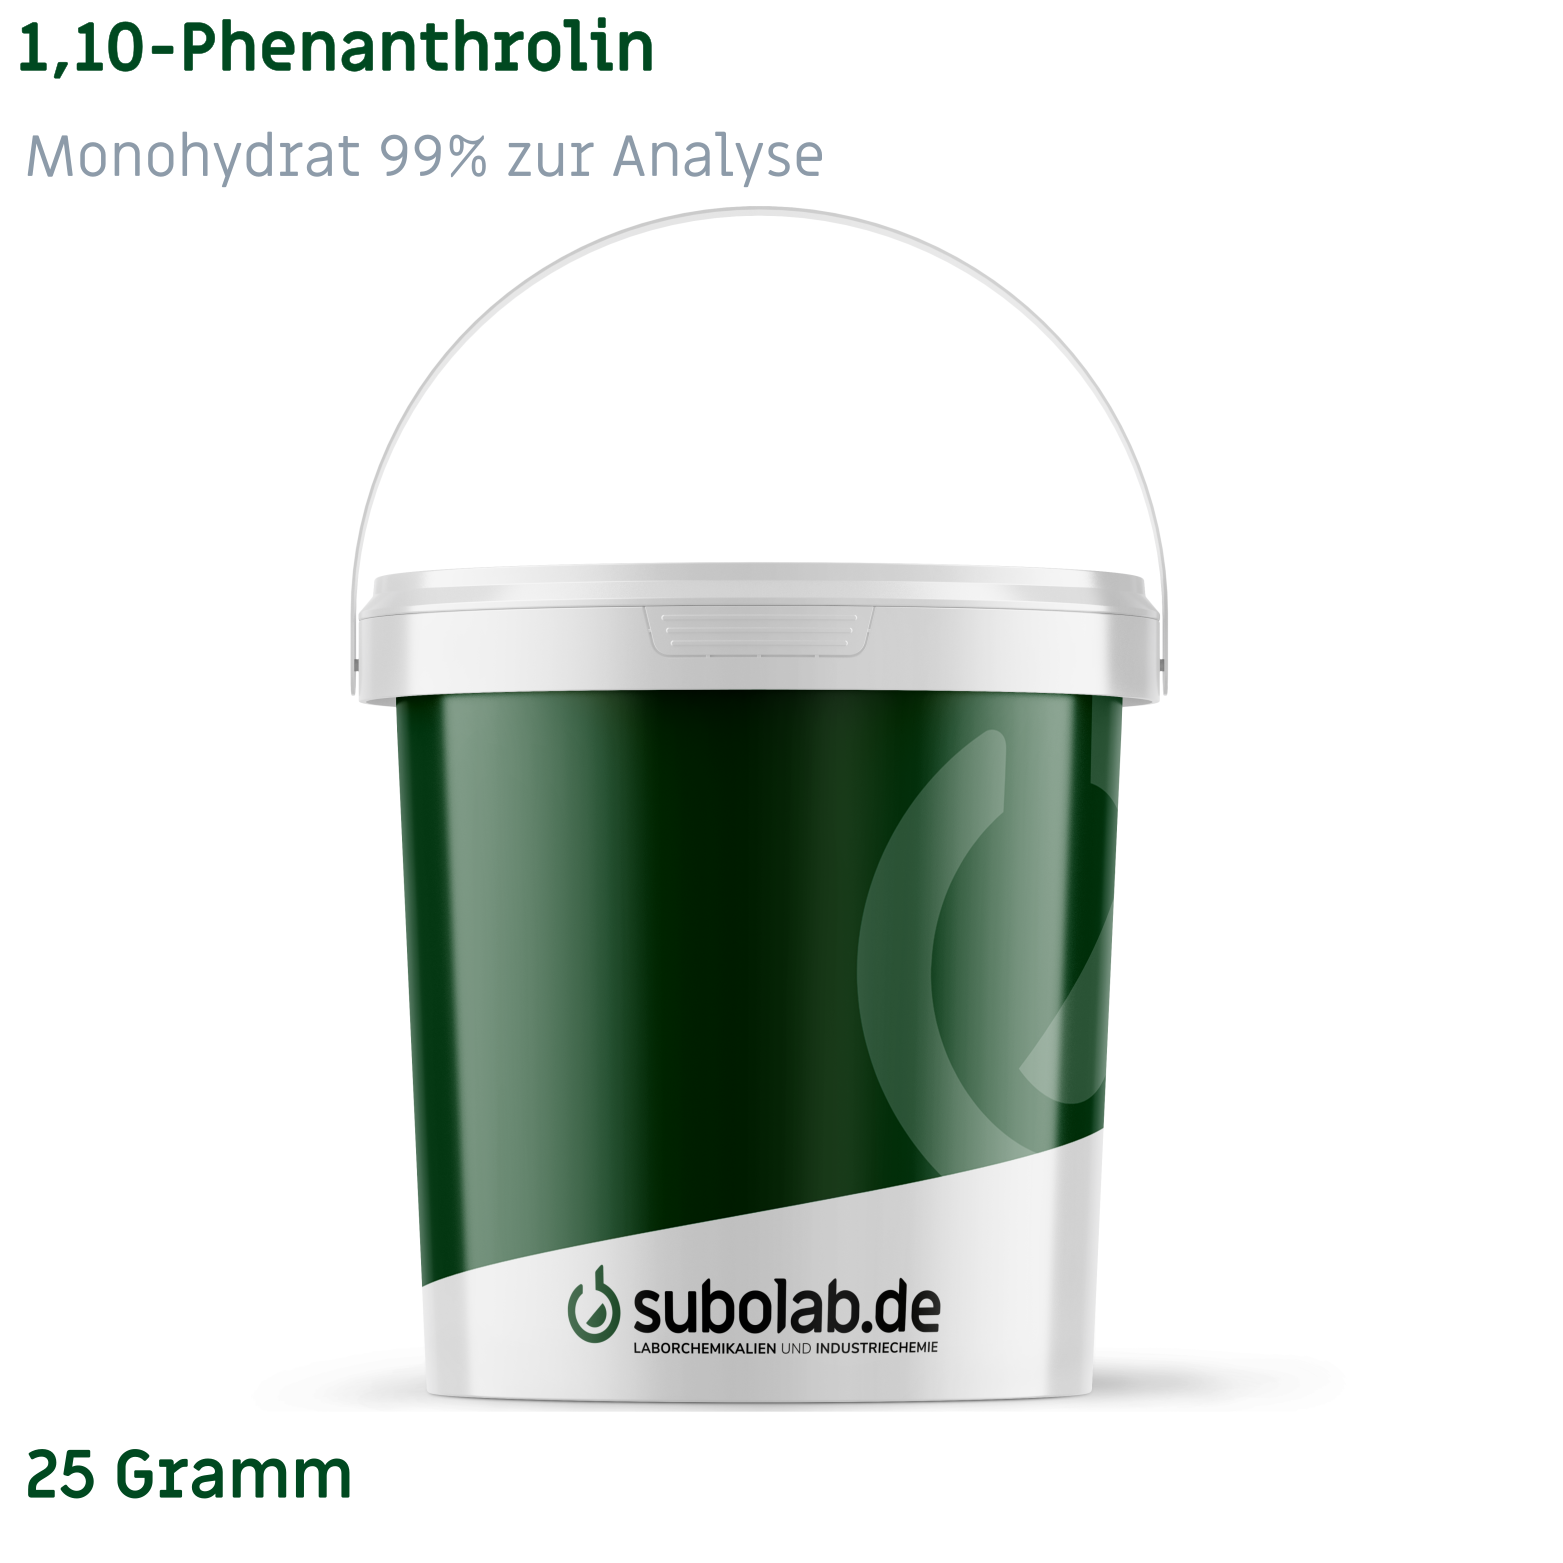 Bild von 1,10-Phenanthrolin - Monohydrat 99% zur Analyse (25 Gramm)